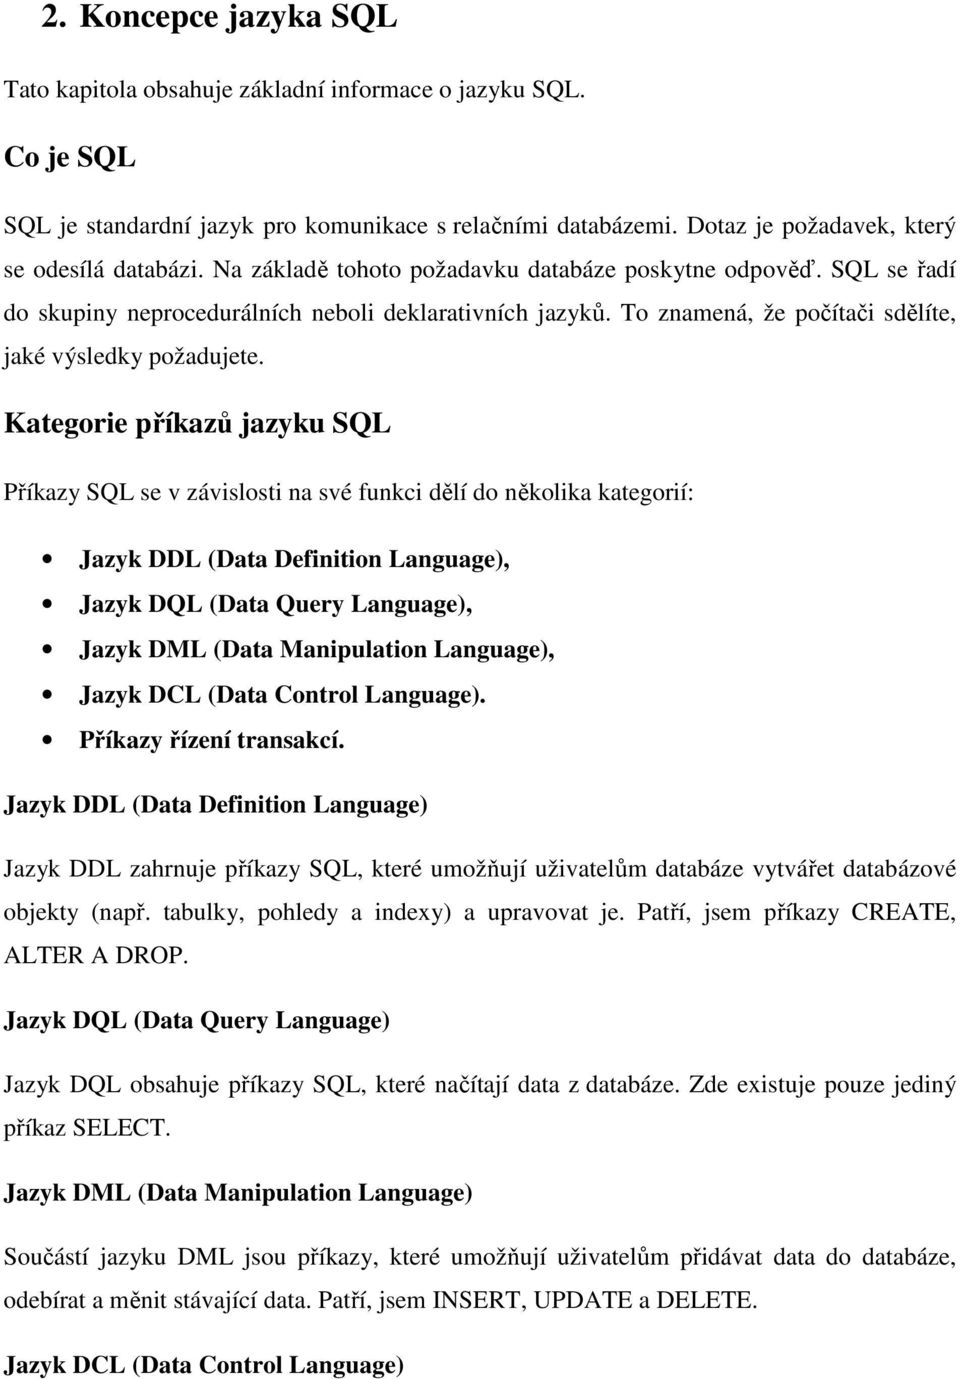 Kategorie příkazů jazyku SQL Příkazy SQL se v závislosti na své funkci dělí do několika kategorií: Jazyk DDL (Data Definition Language), Jazyk DQL (Data Query Language), Jazyk DML (Data Manipulation